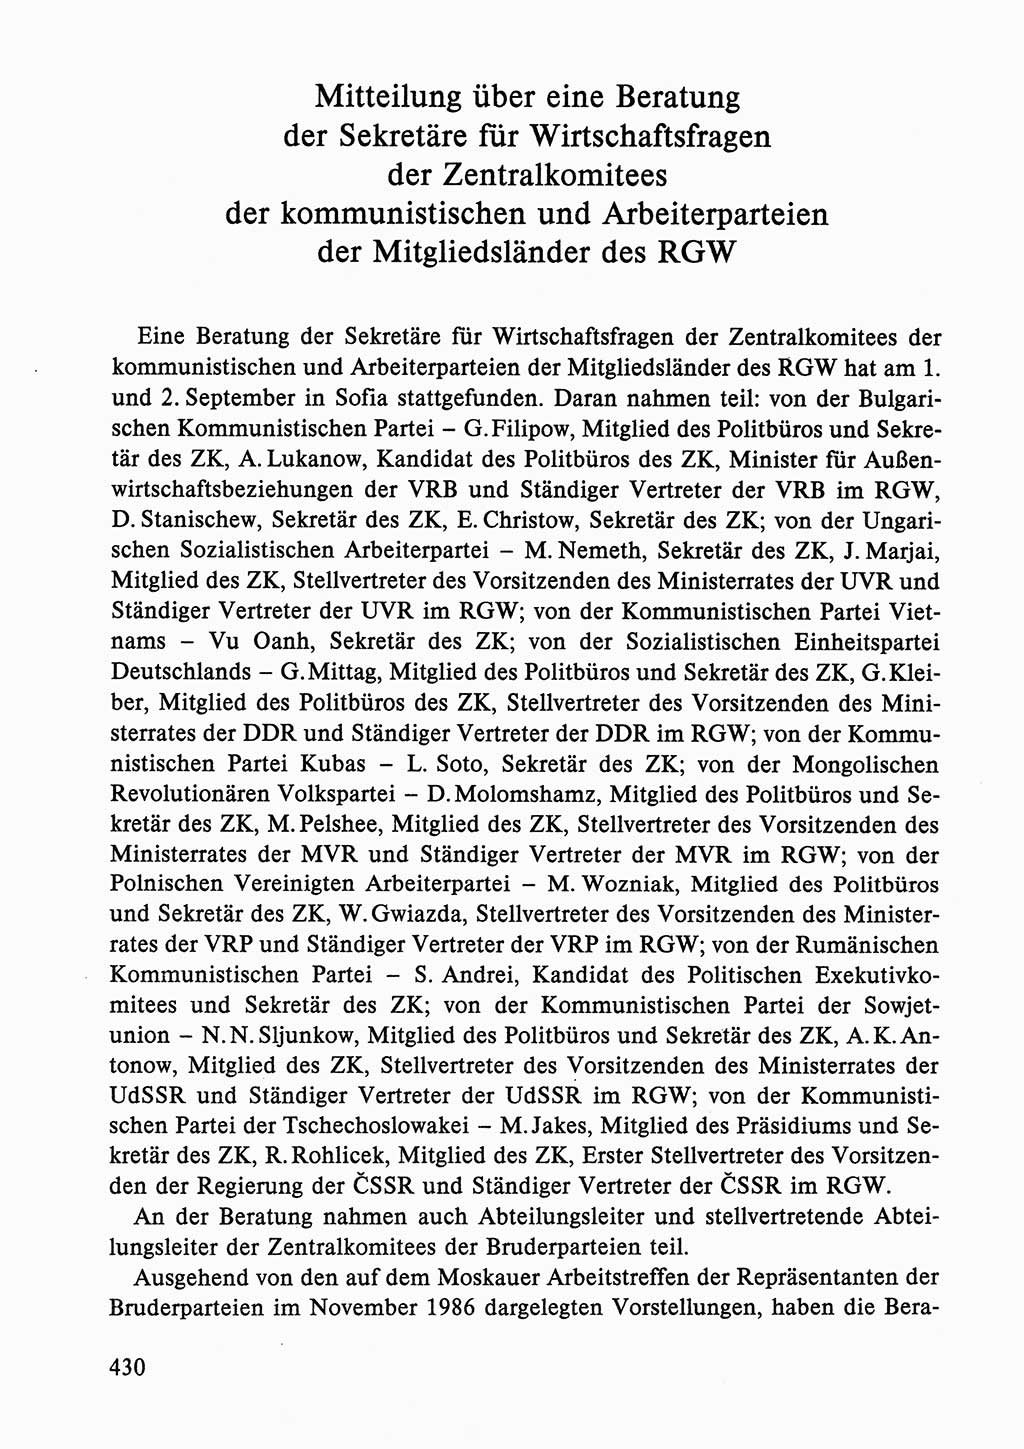 Dokumente der Sozialistischen Einheitspartei Deutschlands (SED) [Deutsche Demokratische Republik (DDR)] 1986-1987, Seite 430 (Dok. SED DDR 1986-1987, S. 430)